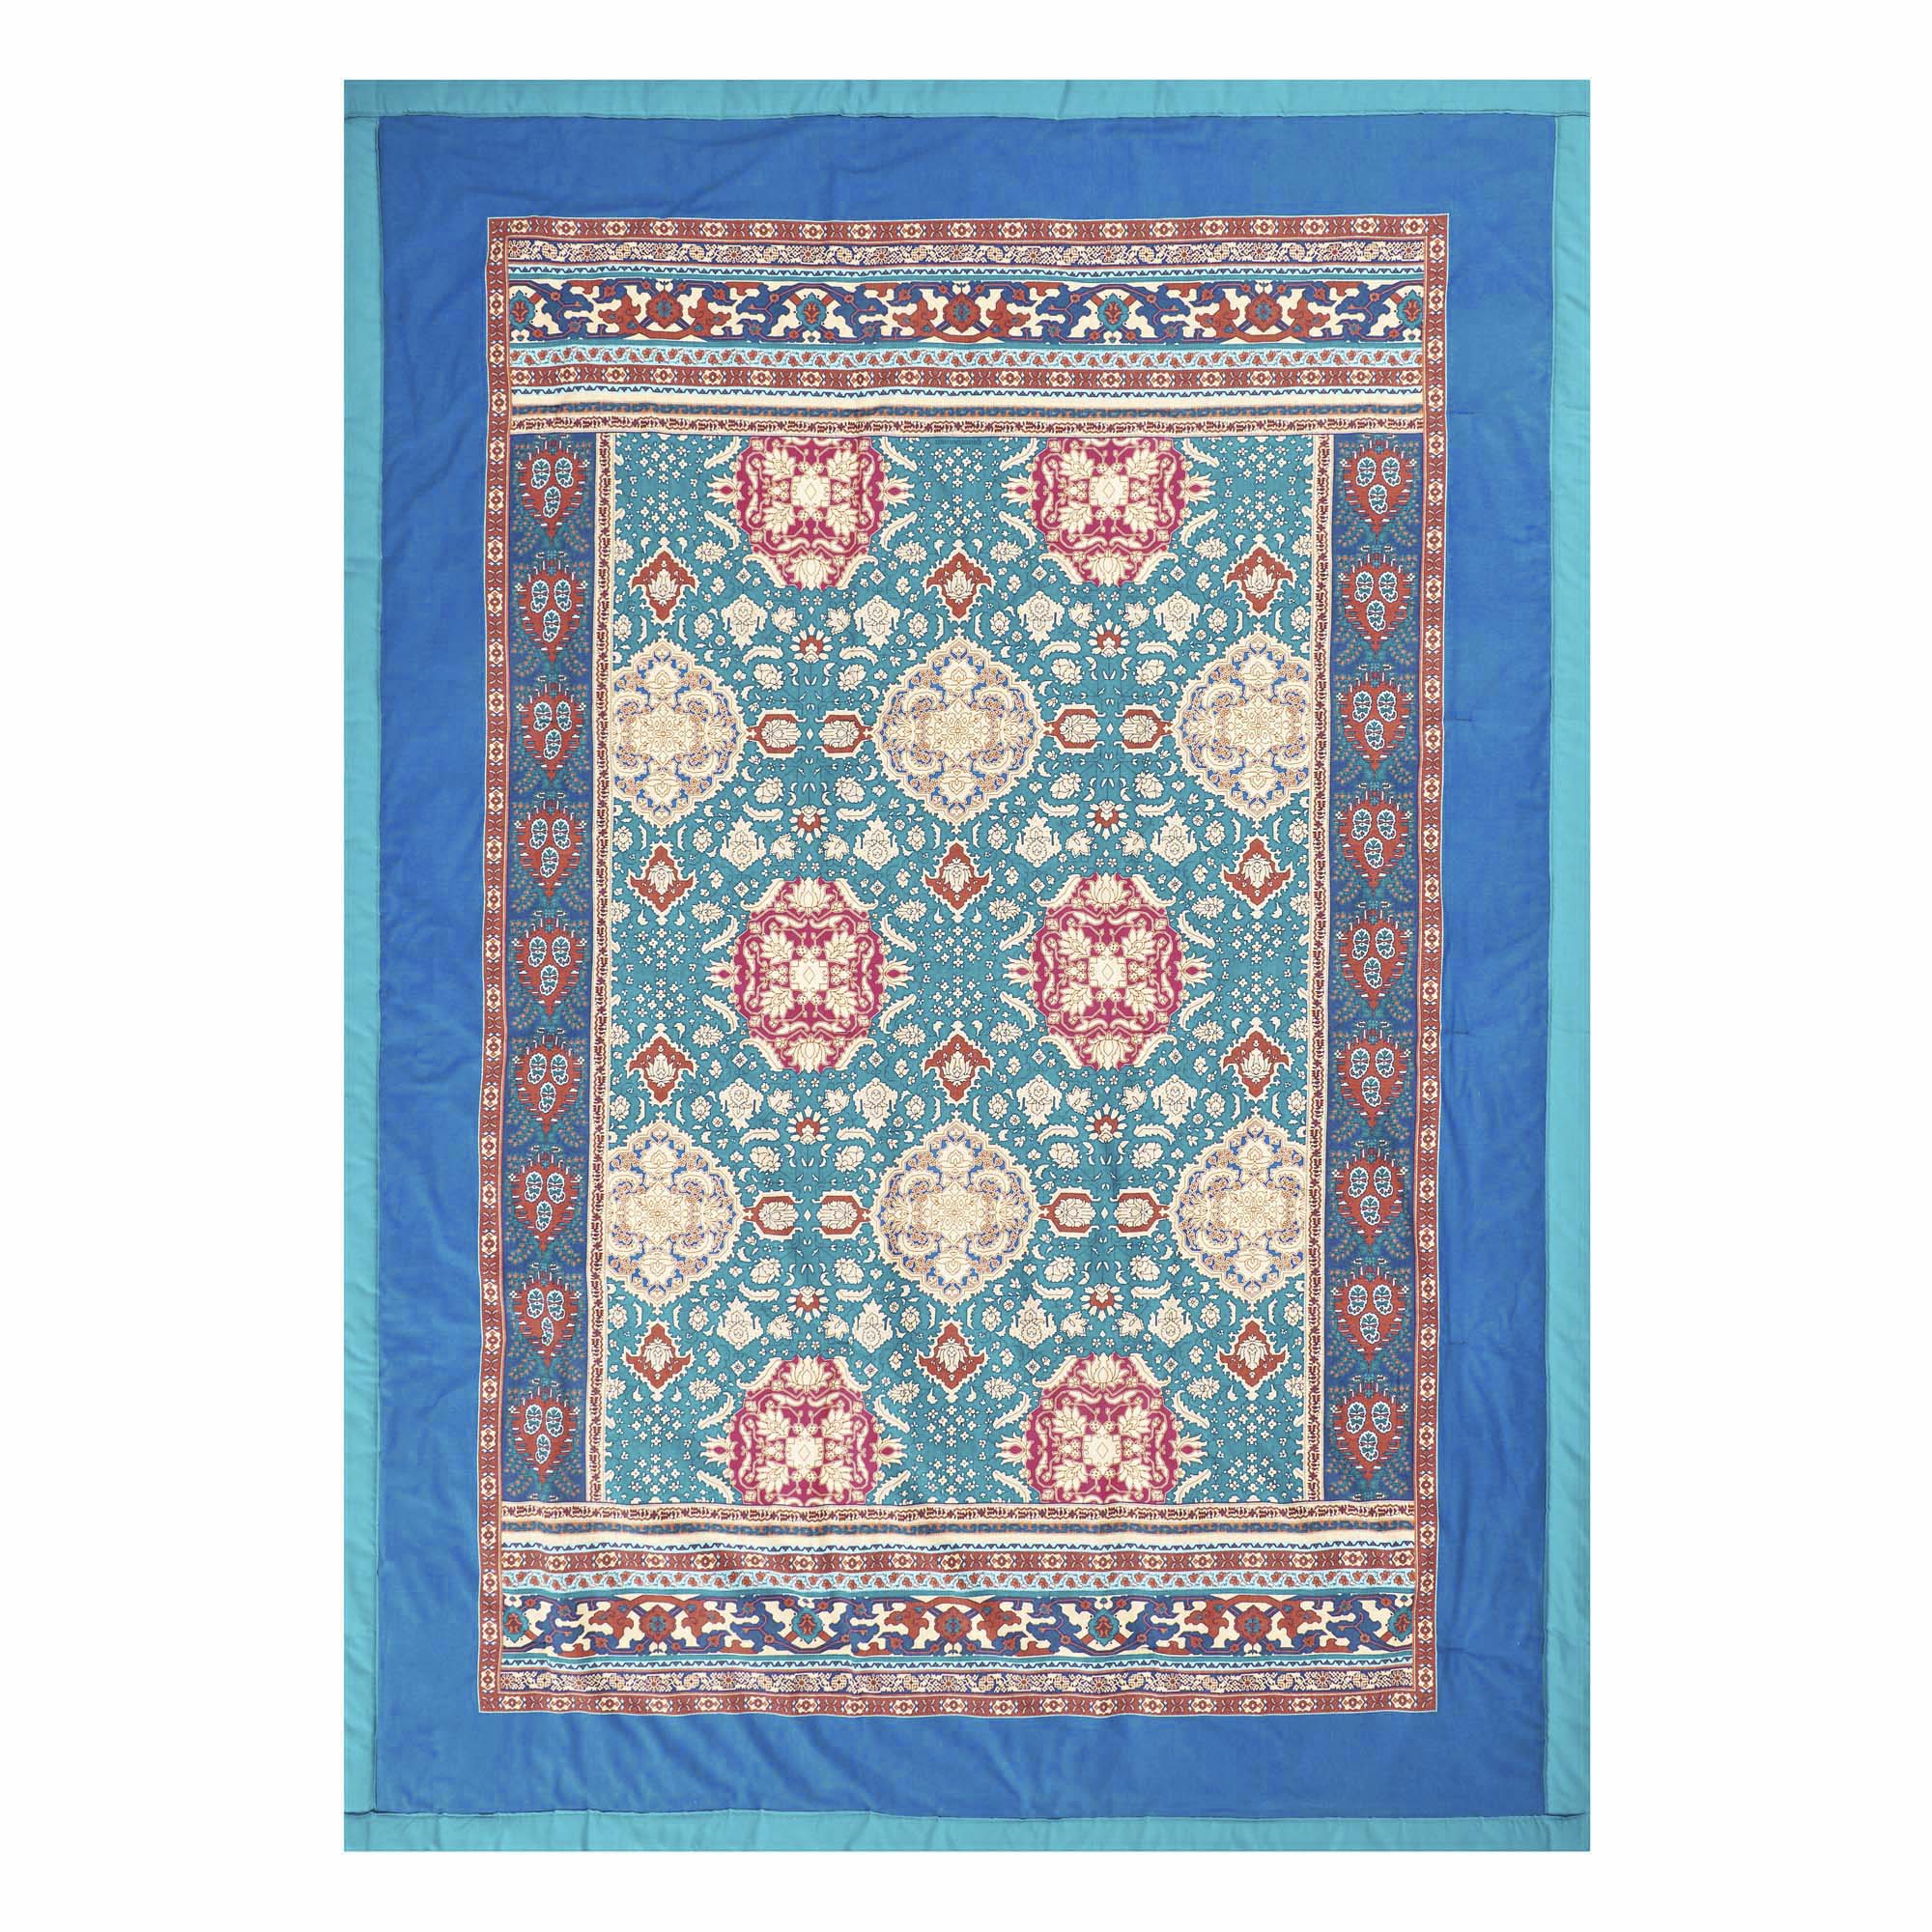 Plaid Bassetti San Marco algodón. Colores azules brillantes diseño motivos persas en beige y carmín. Franjas perímetro lisas